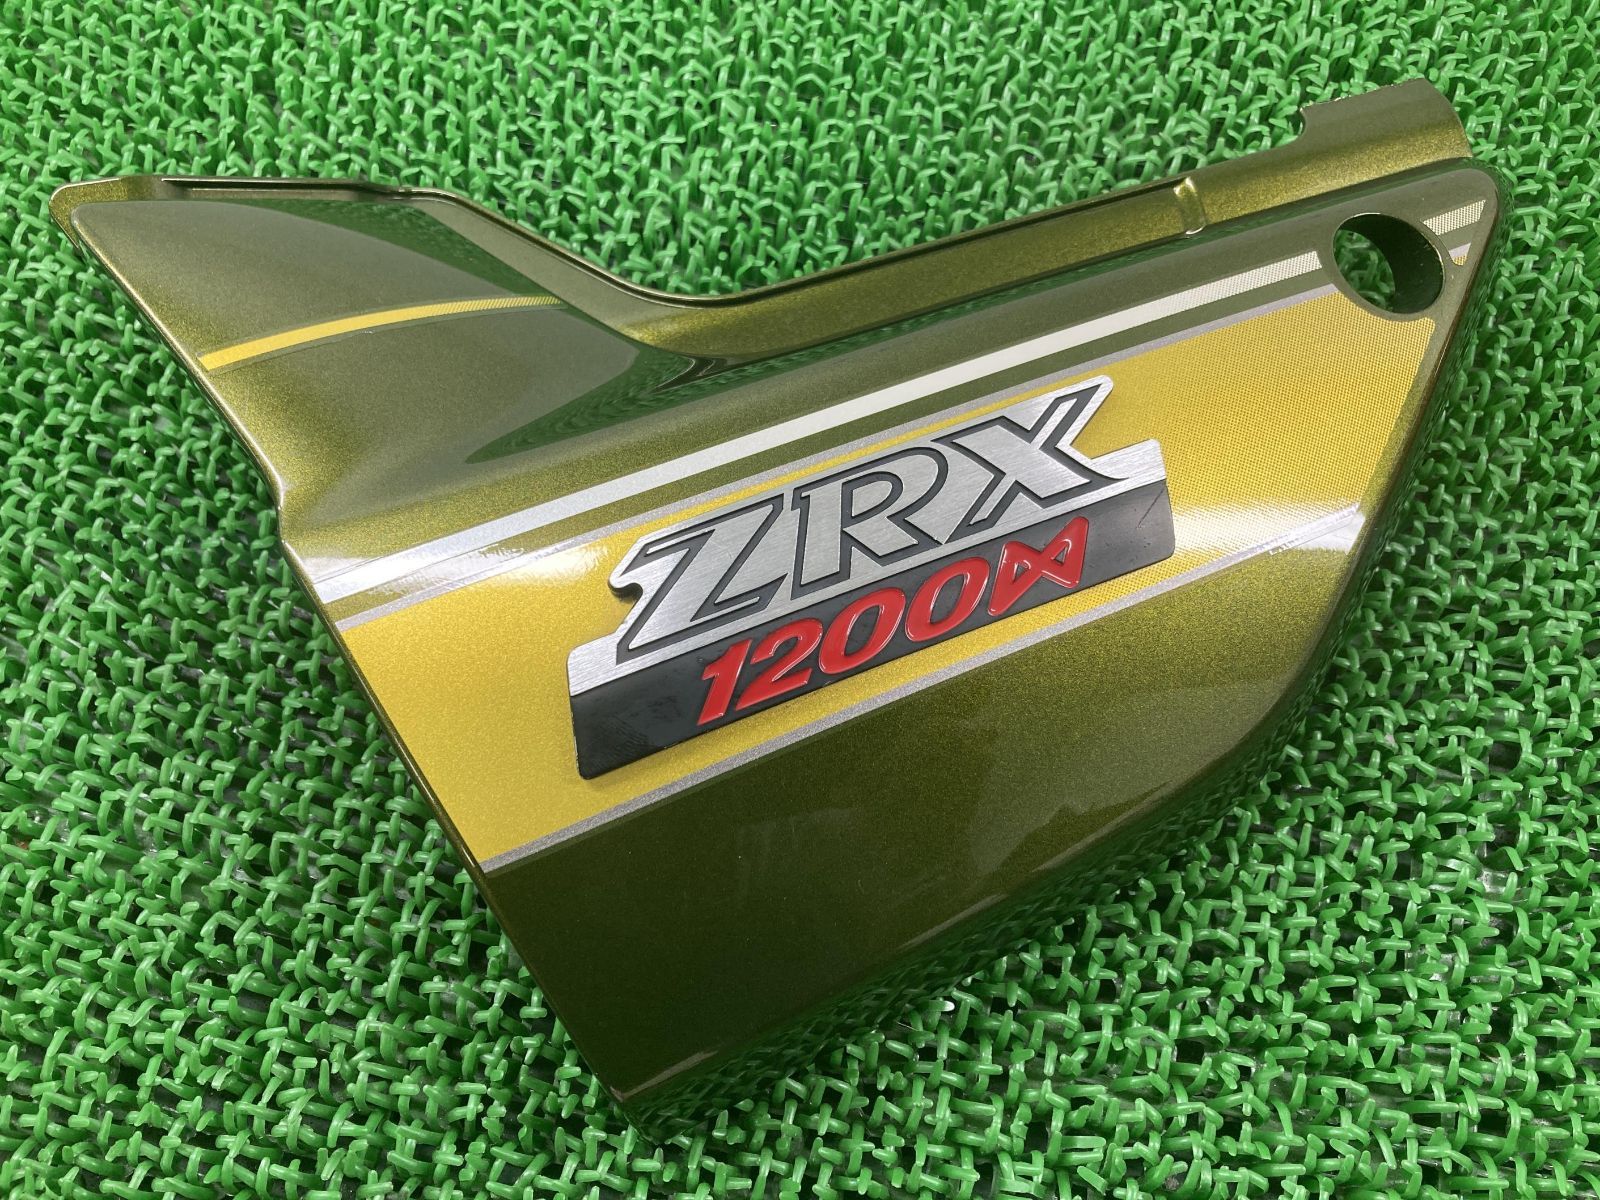 ZRX1200ダエグ サイドカバー 左 緑M 36001-1597 カワサキ 純正  バイク 部品 ZRT20D コケキズ無し そのままでも使える 修復素材に ノーマル戻しに 車検 Genuine:22105818